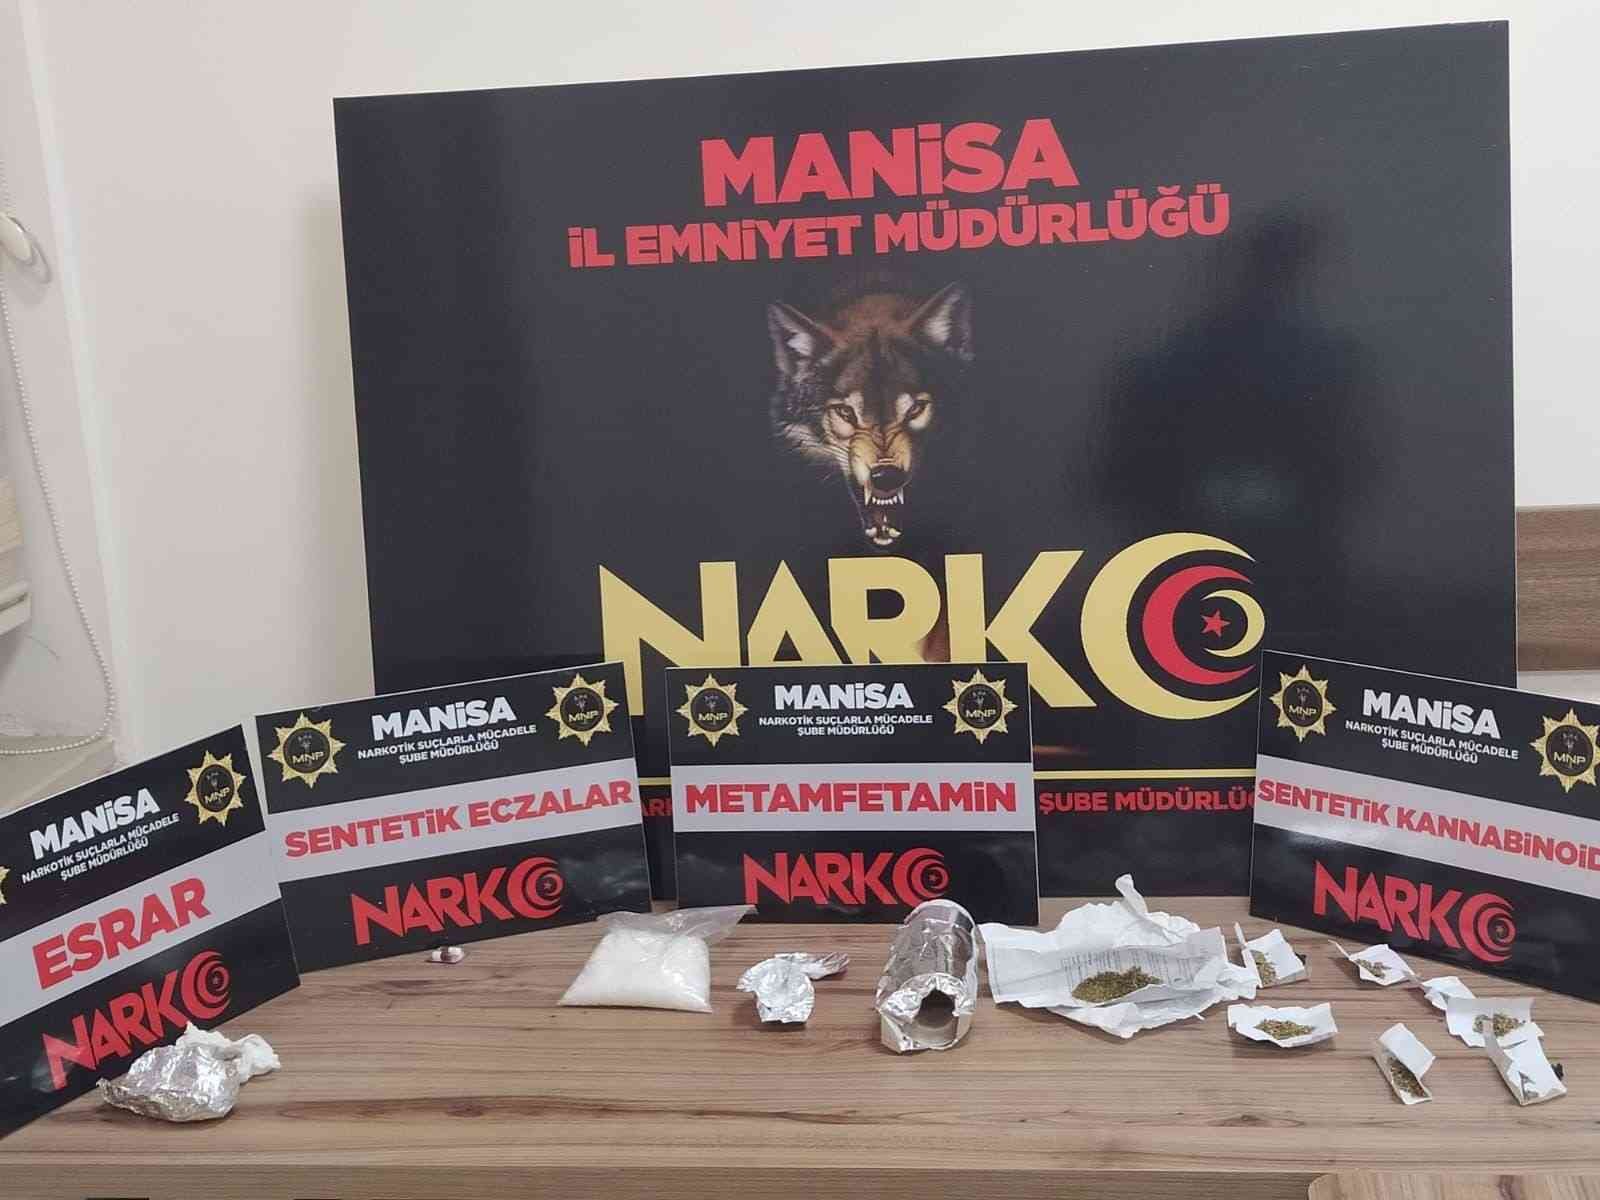 Manisa’da 4 uyuşturucu taciri tutuklandı #manisa